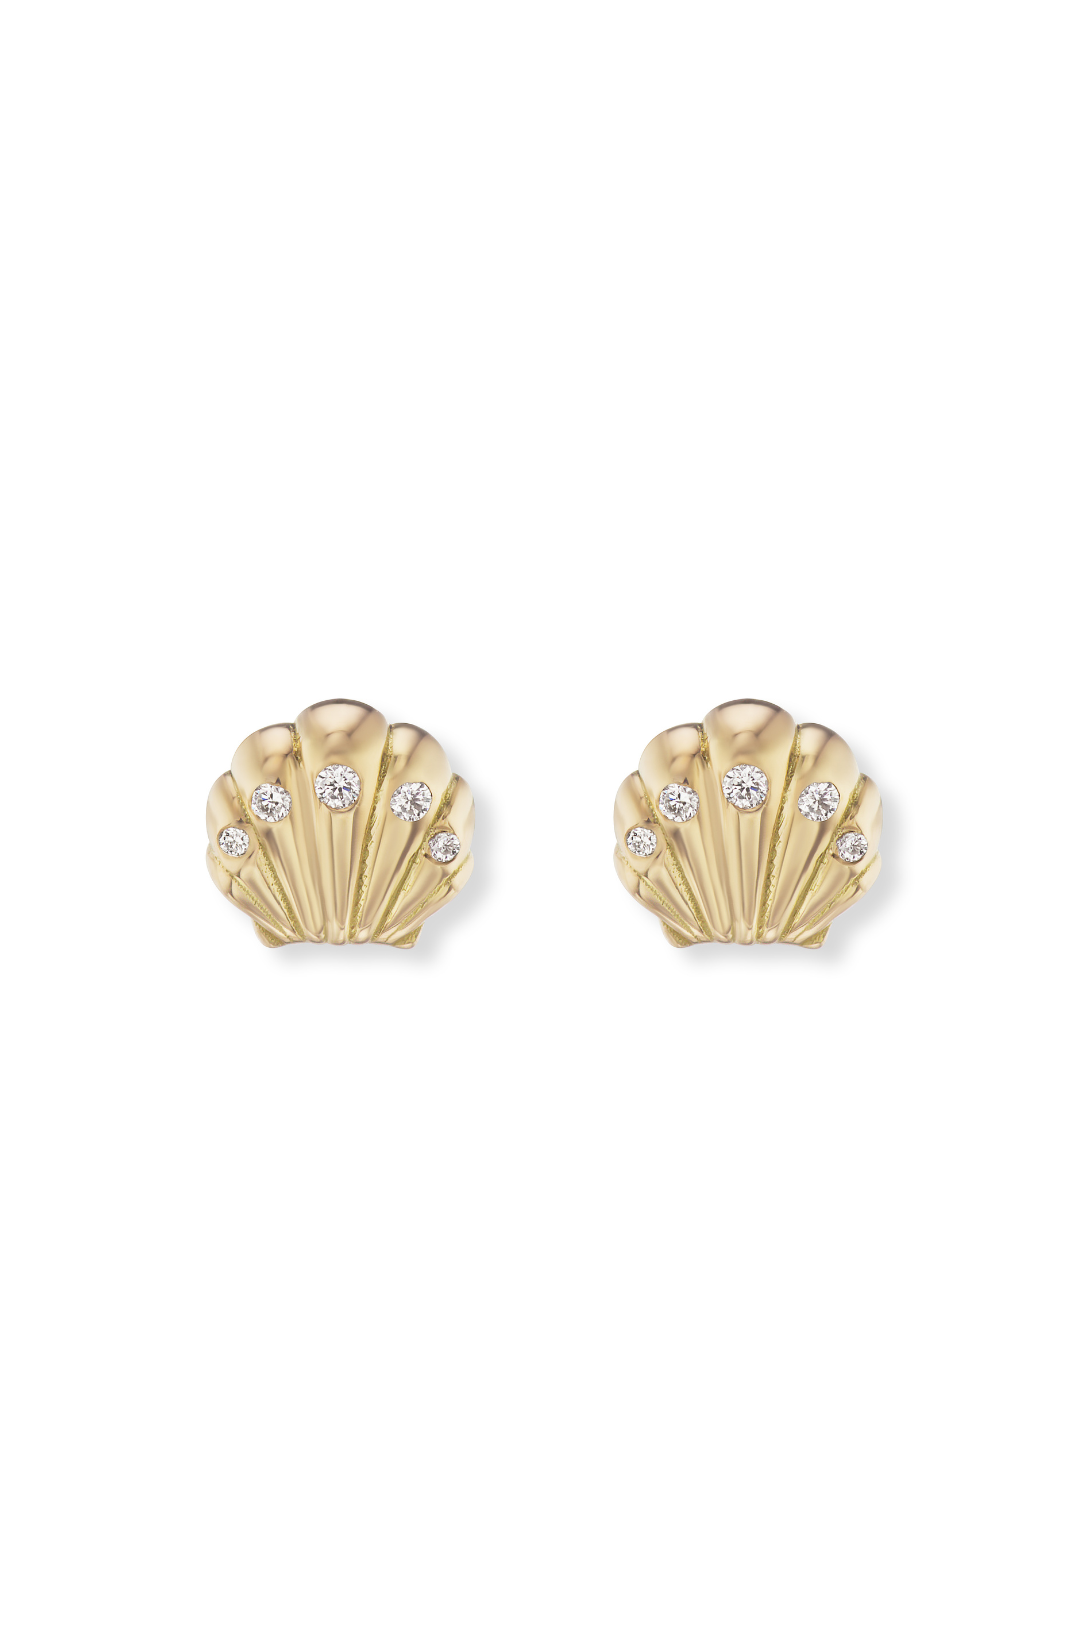 Fine Jewelry Earrings by Saratti